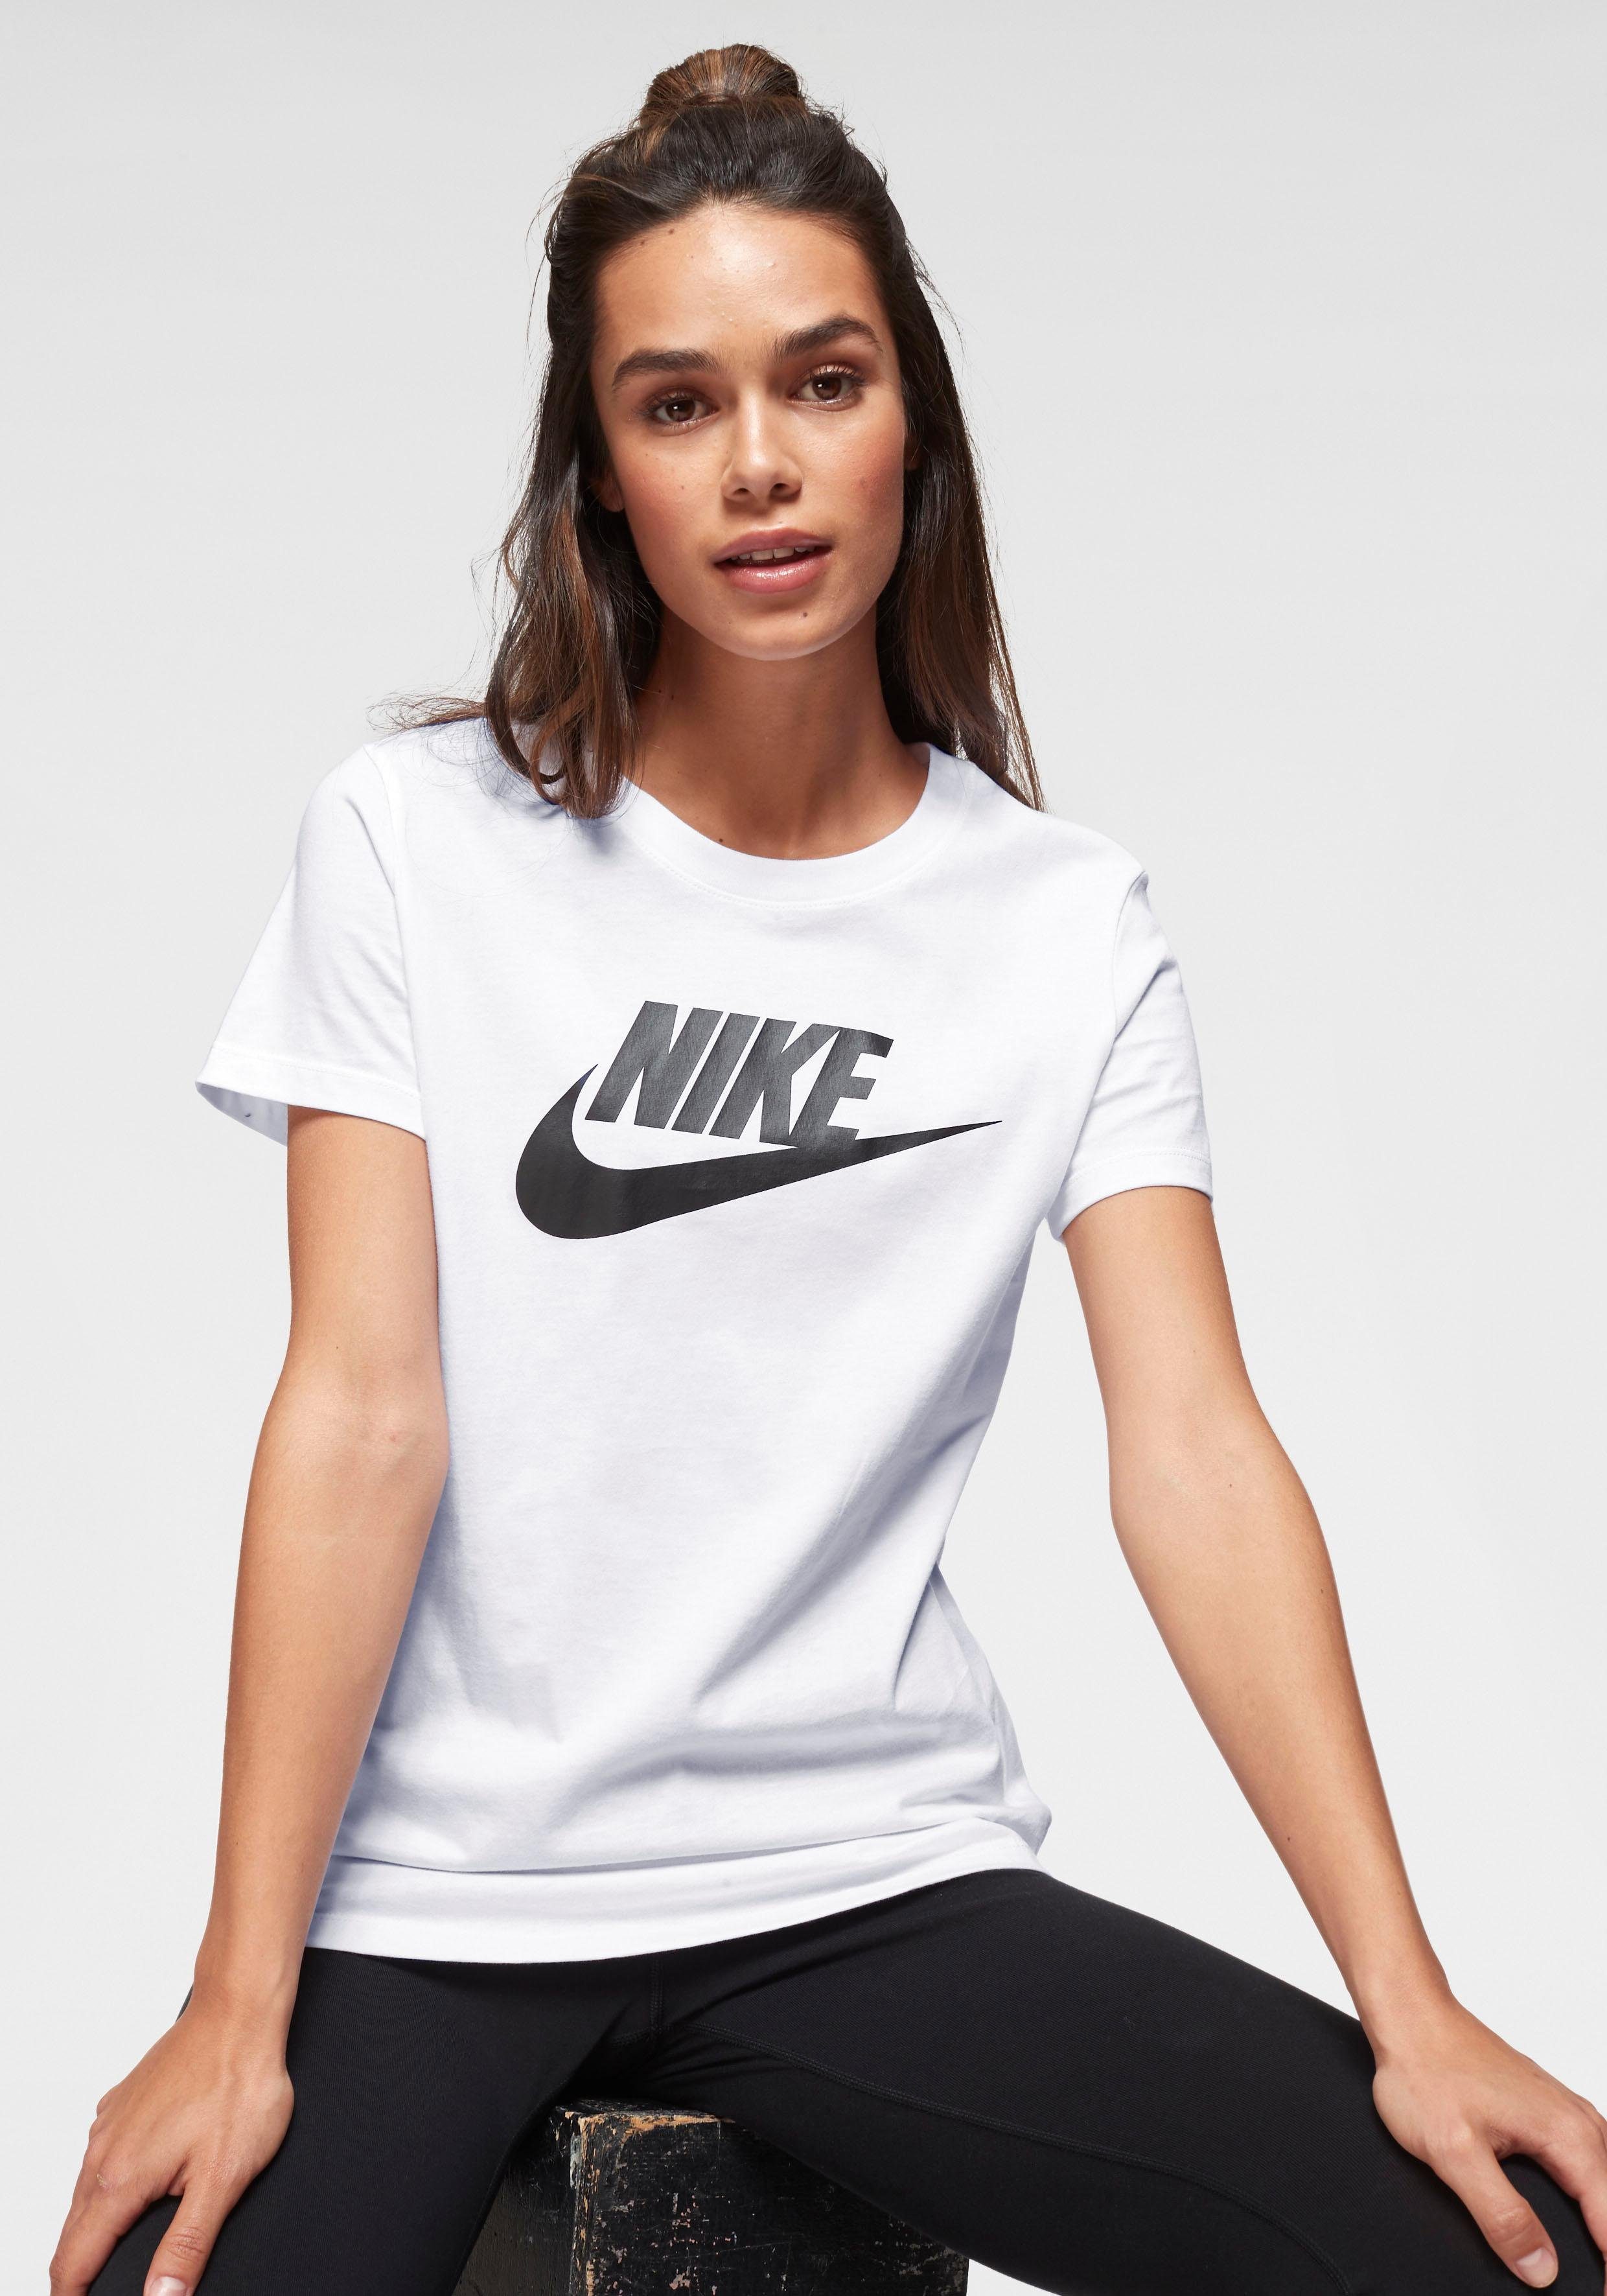 Nike Sportswear Damen T-Shirts online kaufen | OTTO